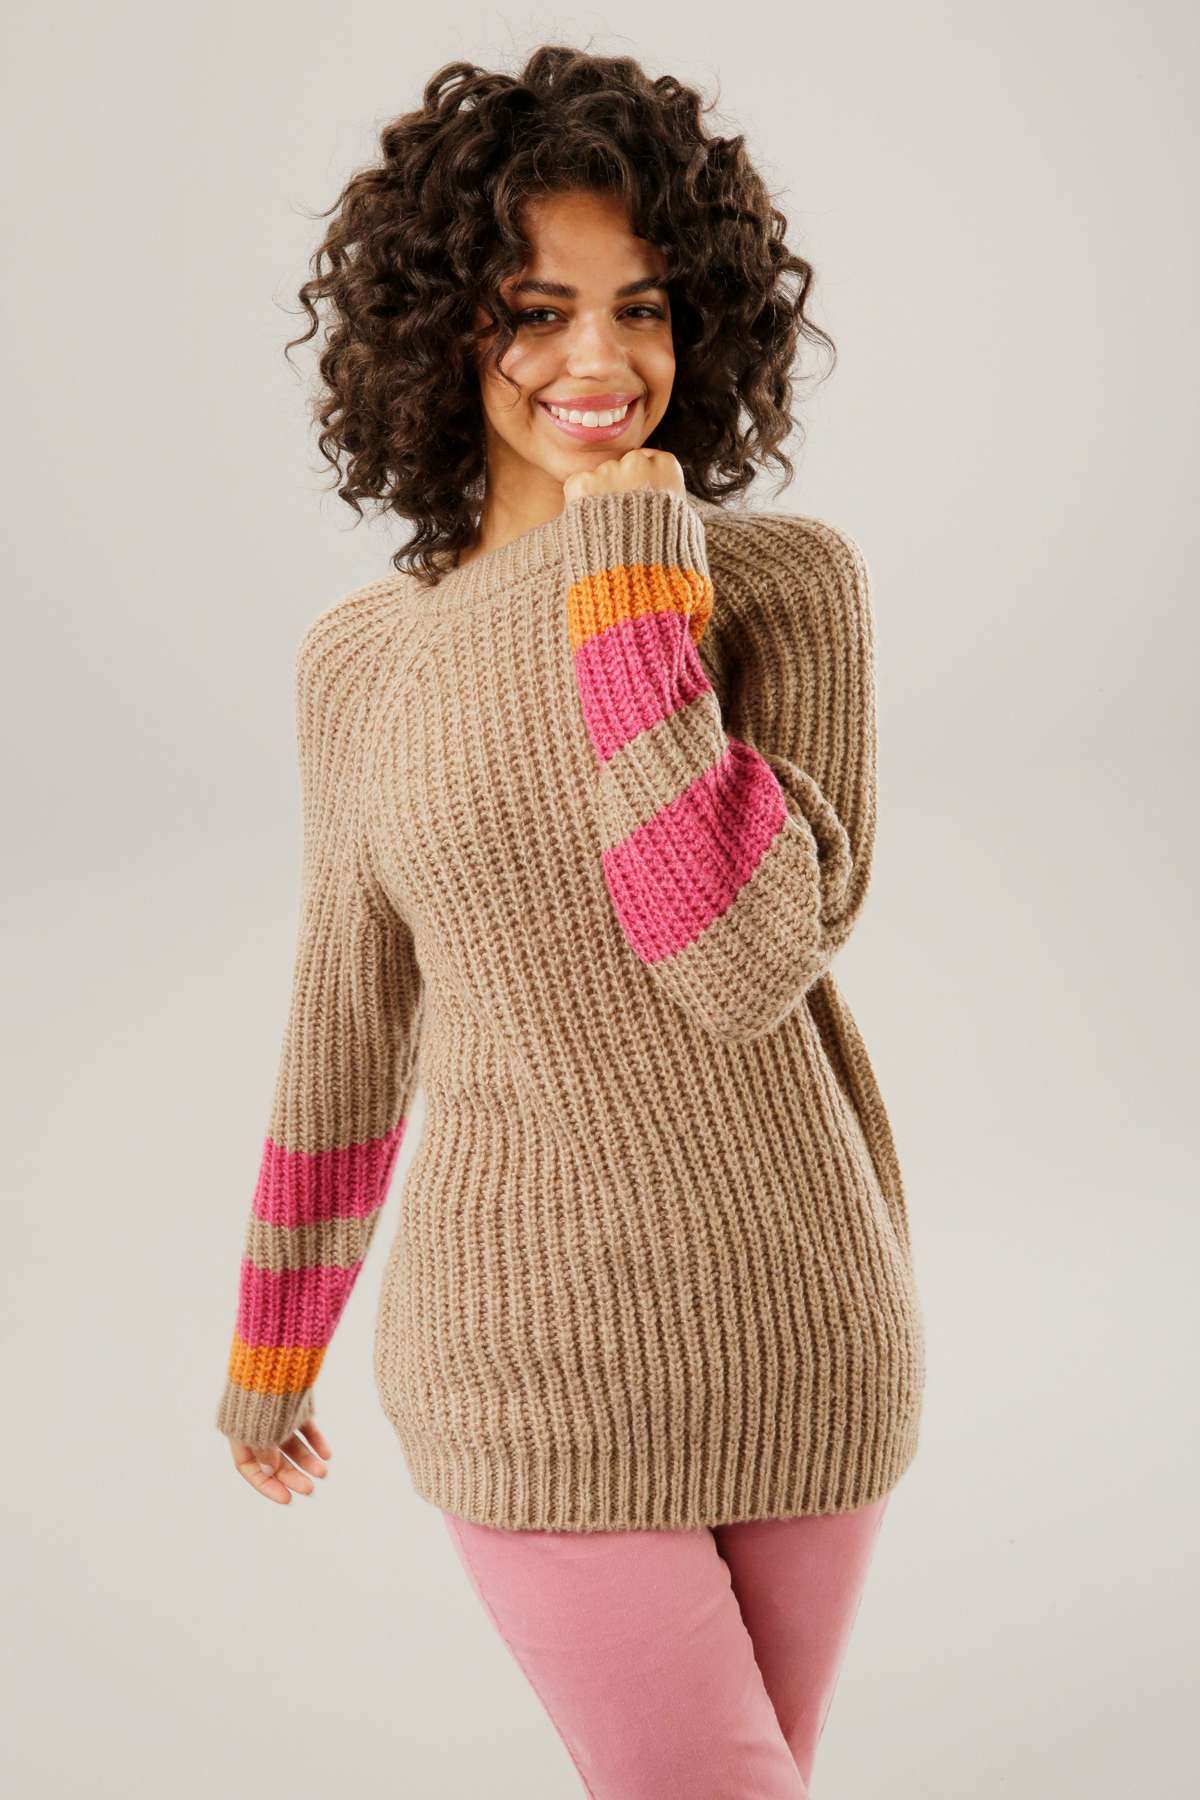 Вязаный свитер с разноцветными полосками на рукавах.